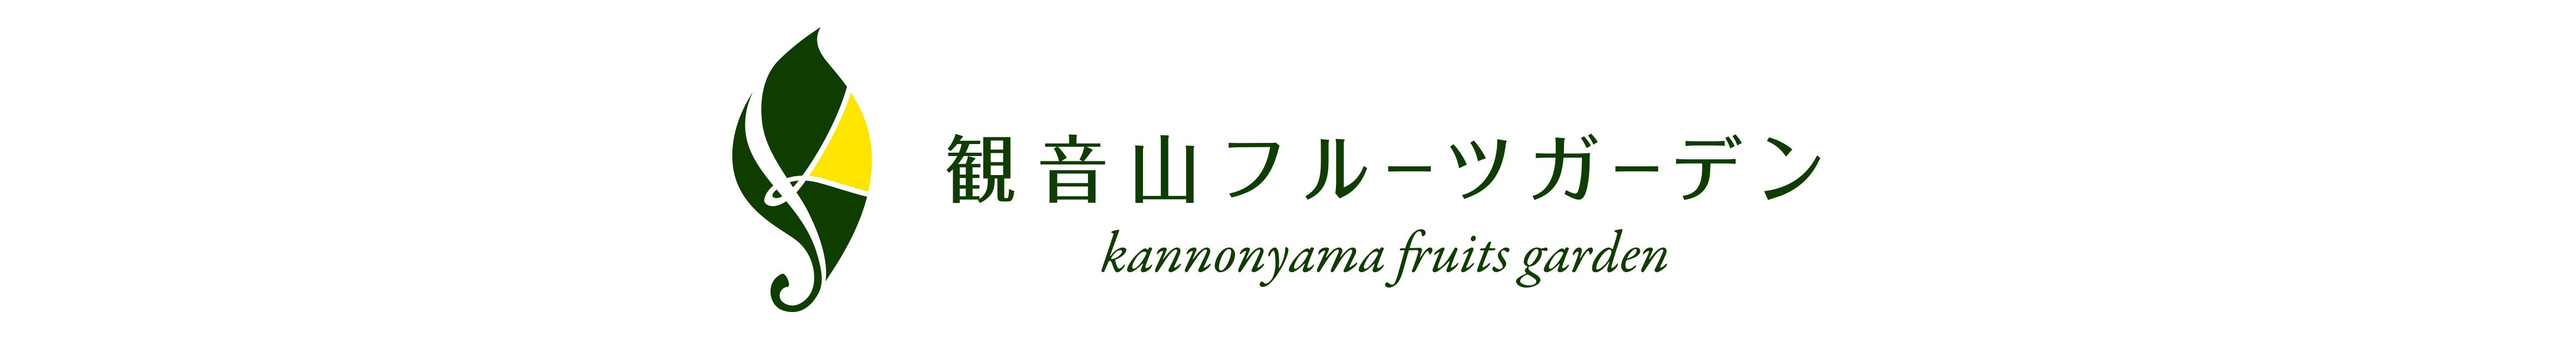 Kannonyama Fruit Garden